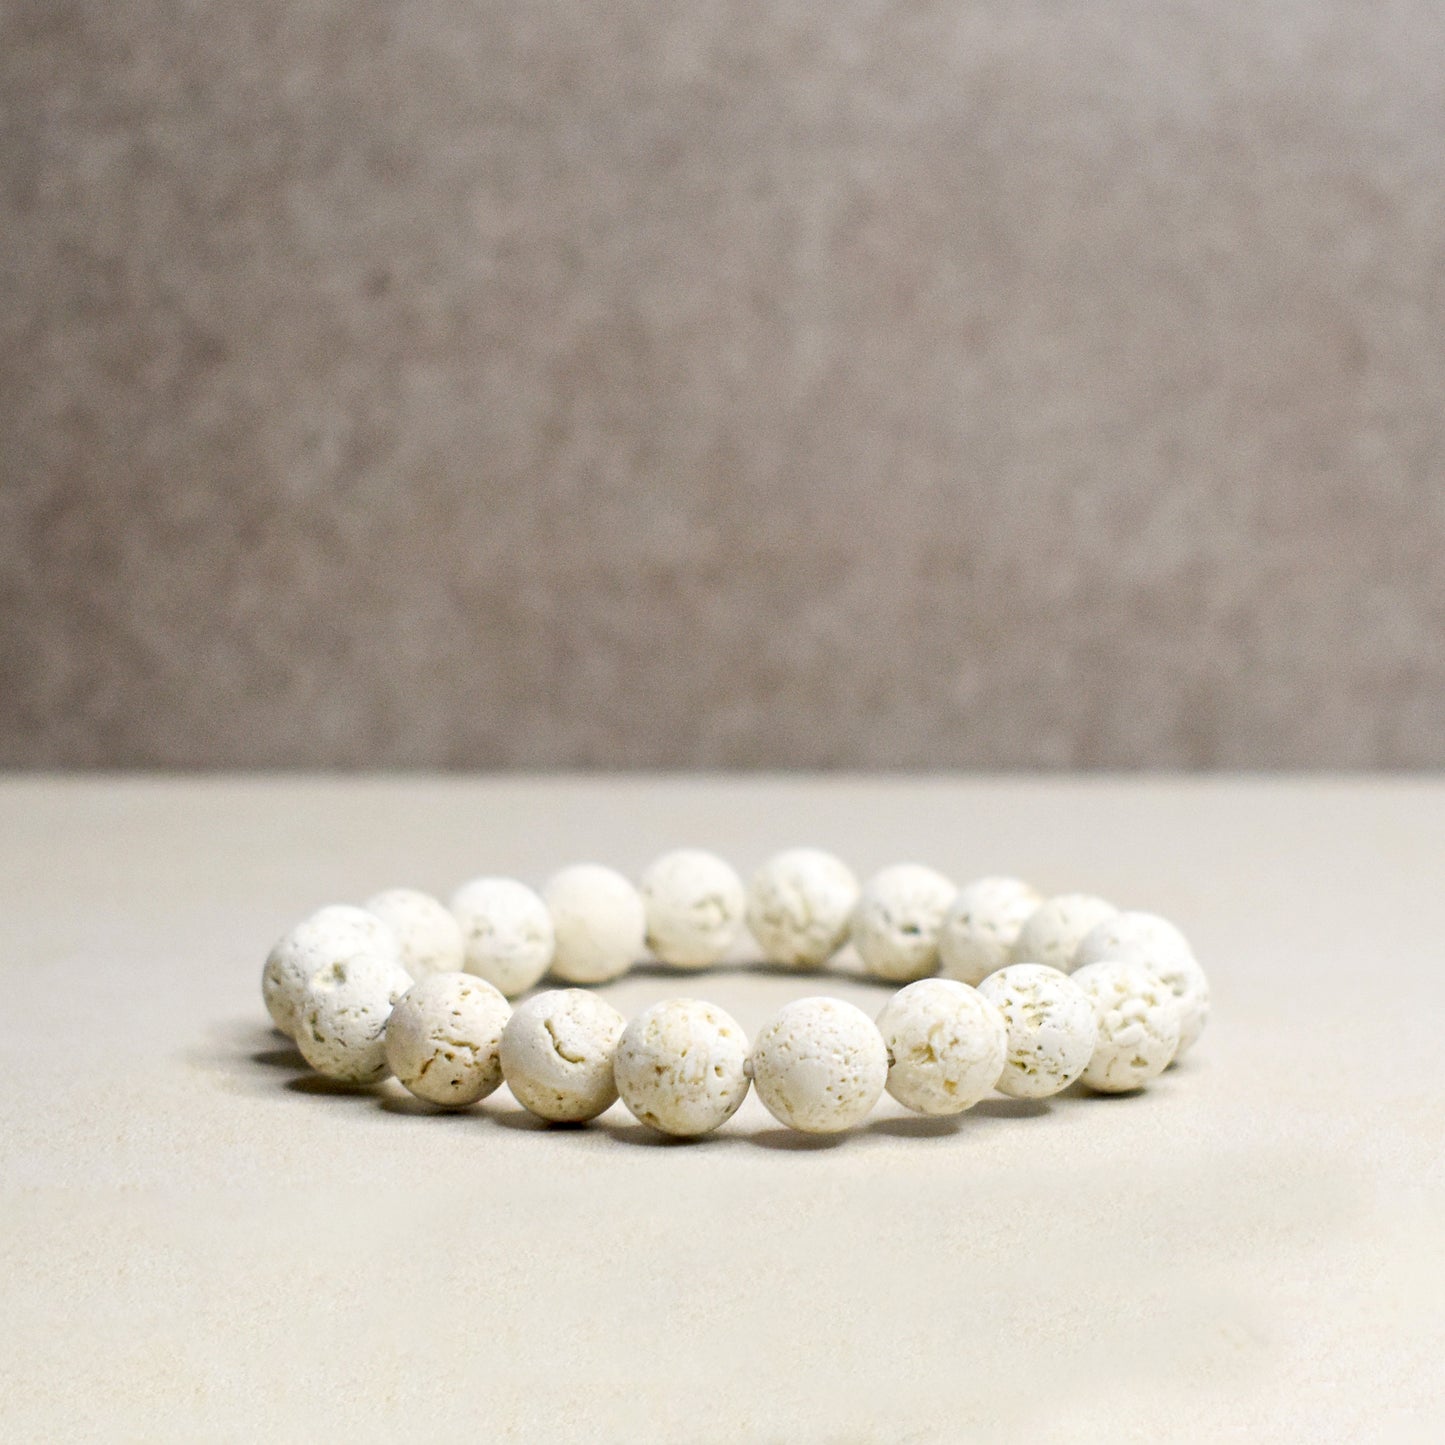 Ryukyu Limestone Bracelet 10mm